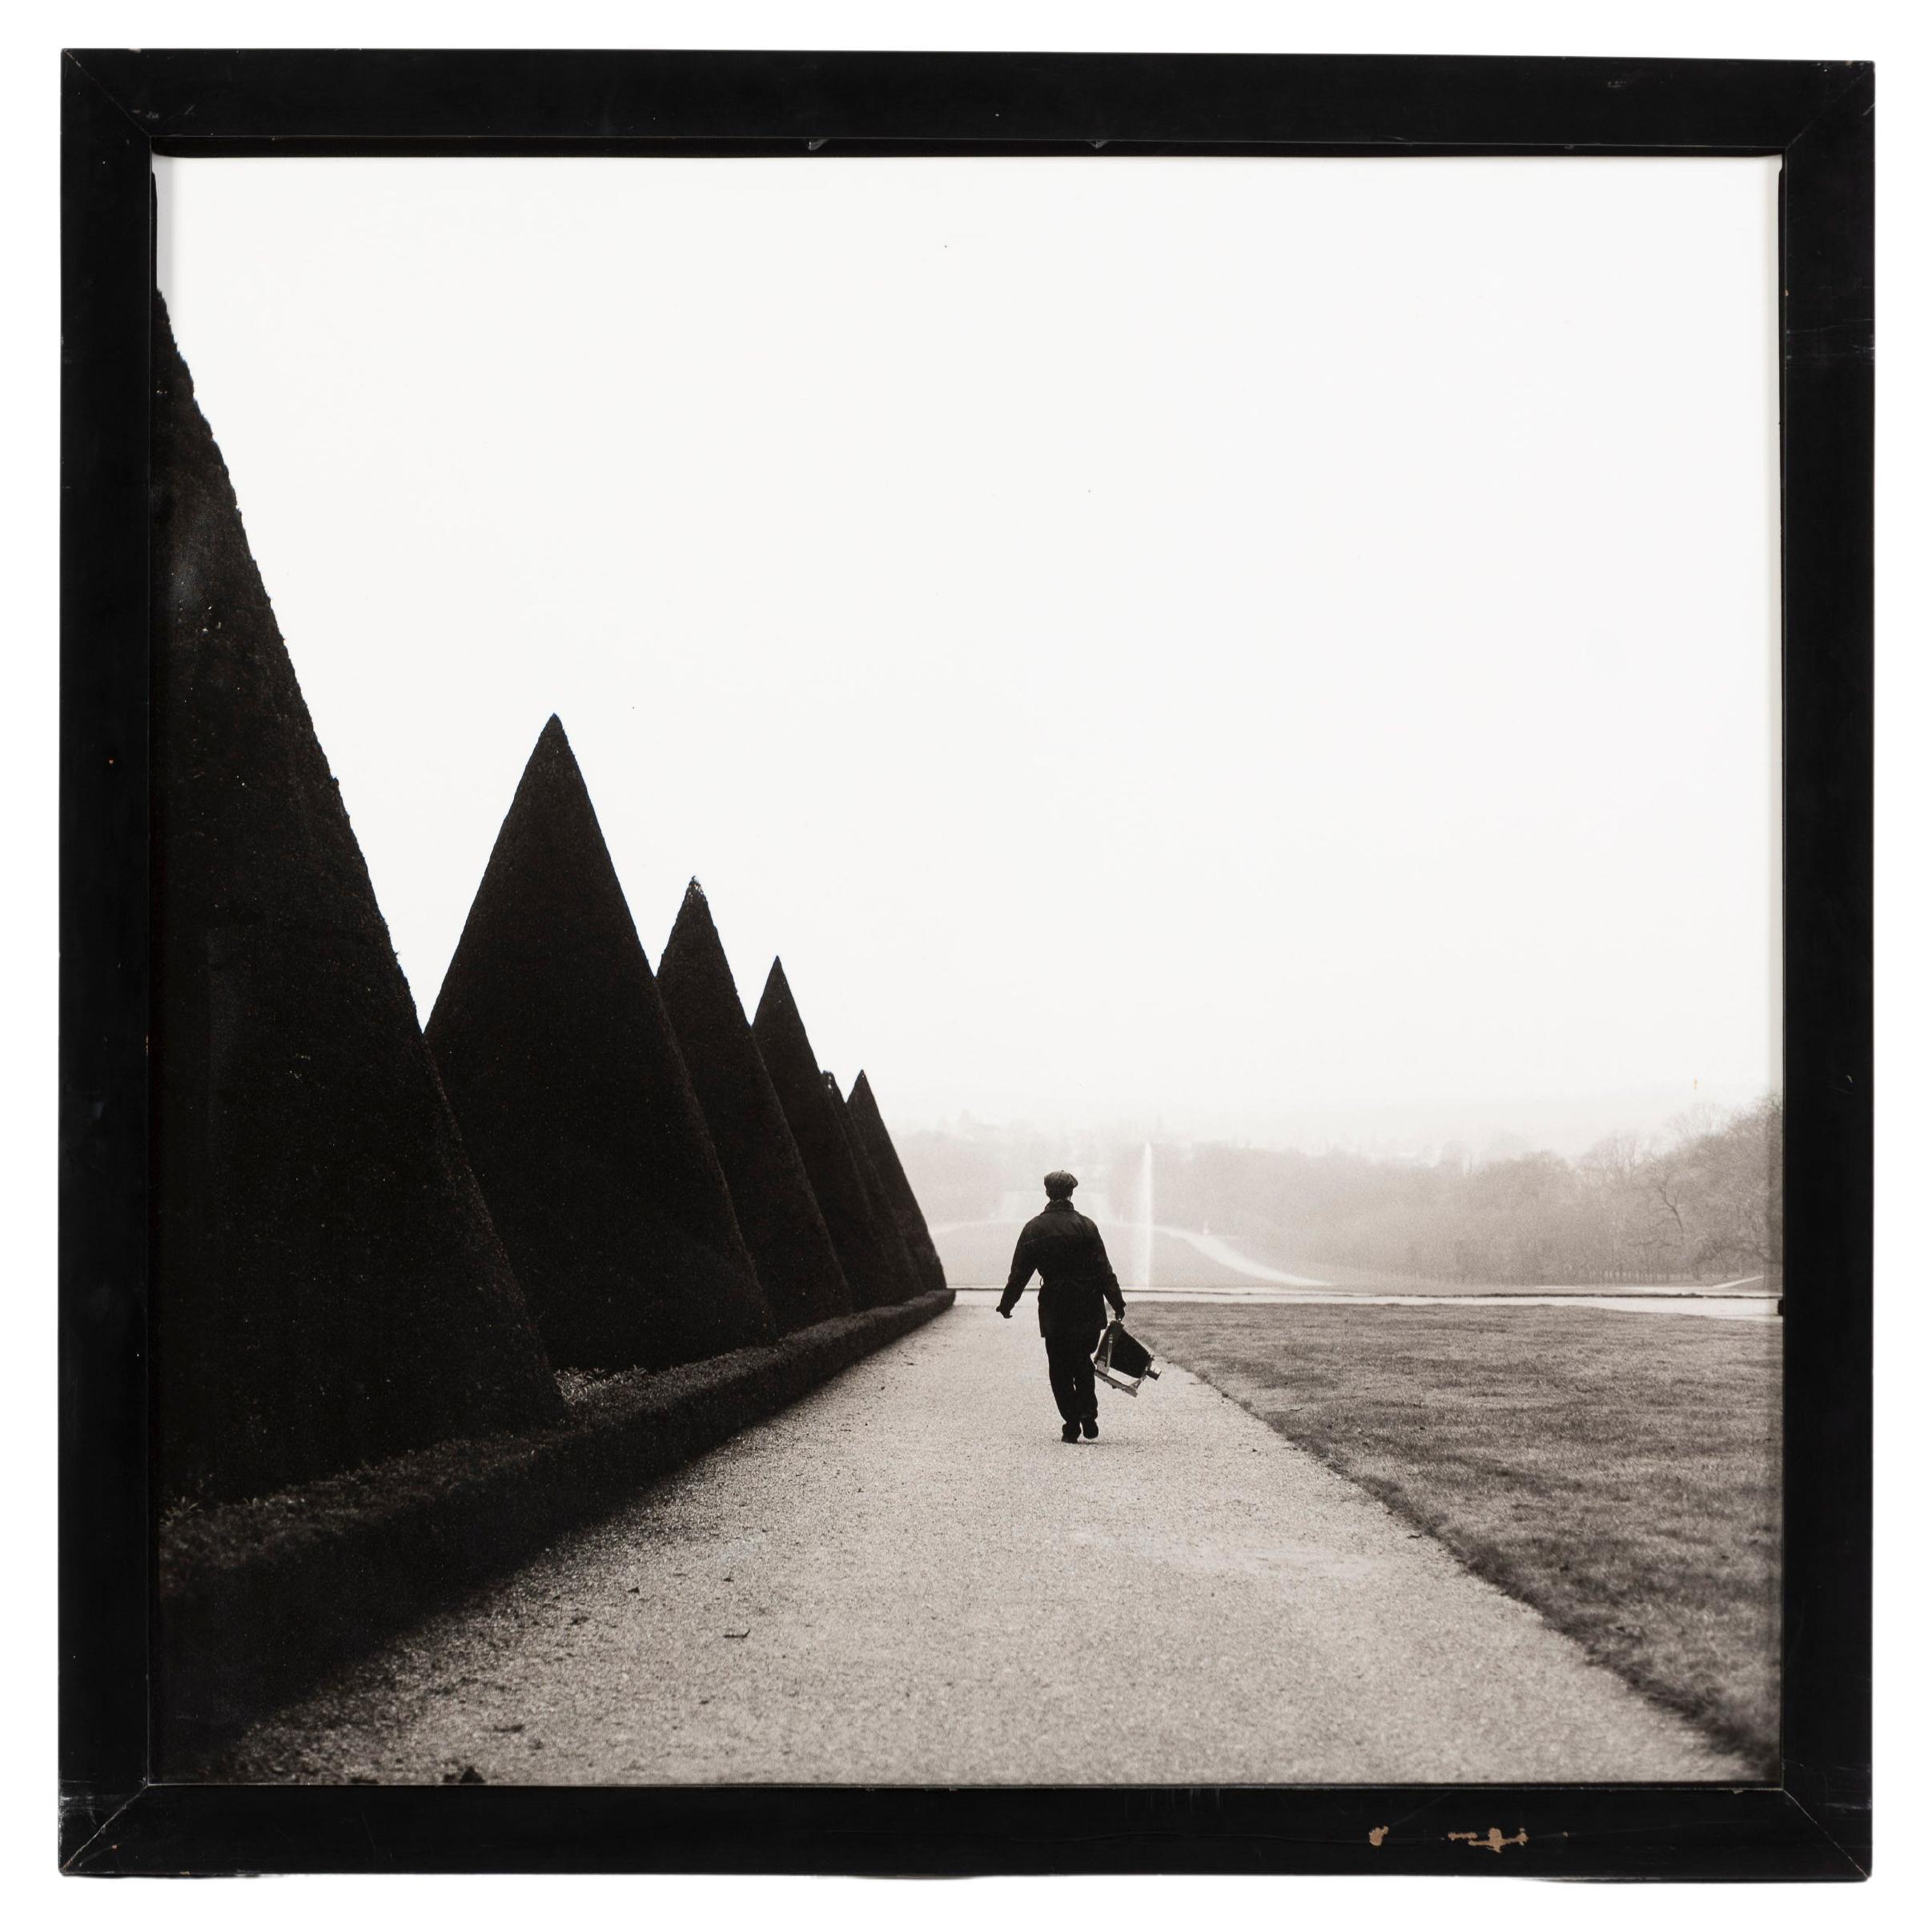 "Peter McGough, Sceaux, Paris, France", Photo by Wouter Deruytter, Belgium, 1994